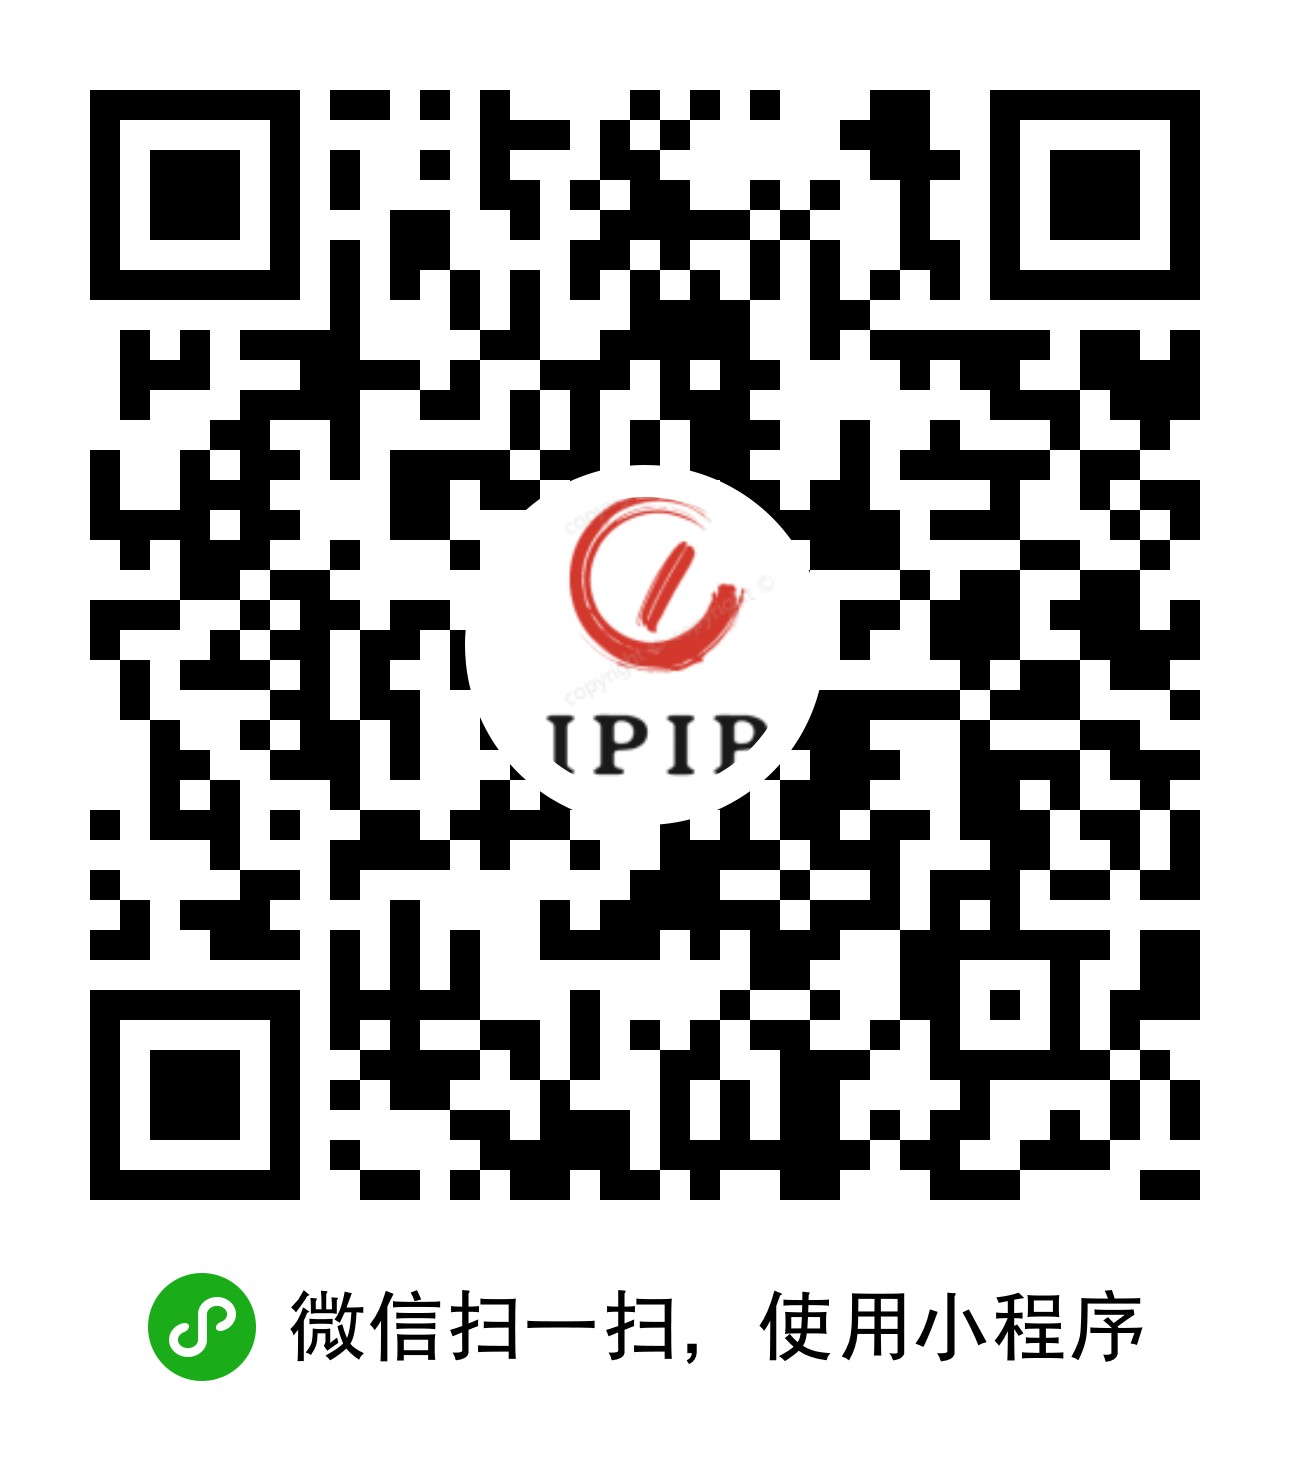 ipip查询_ipip查询小程序_ipip查询微信小程序